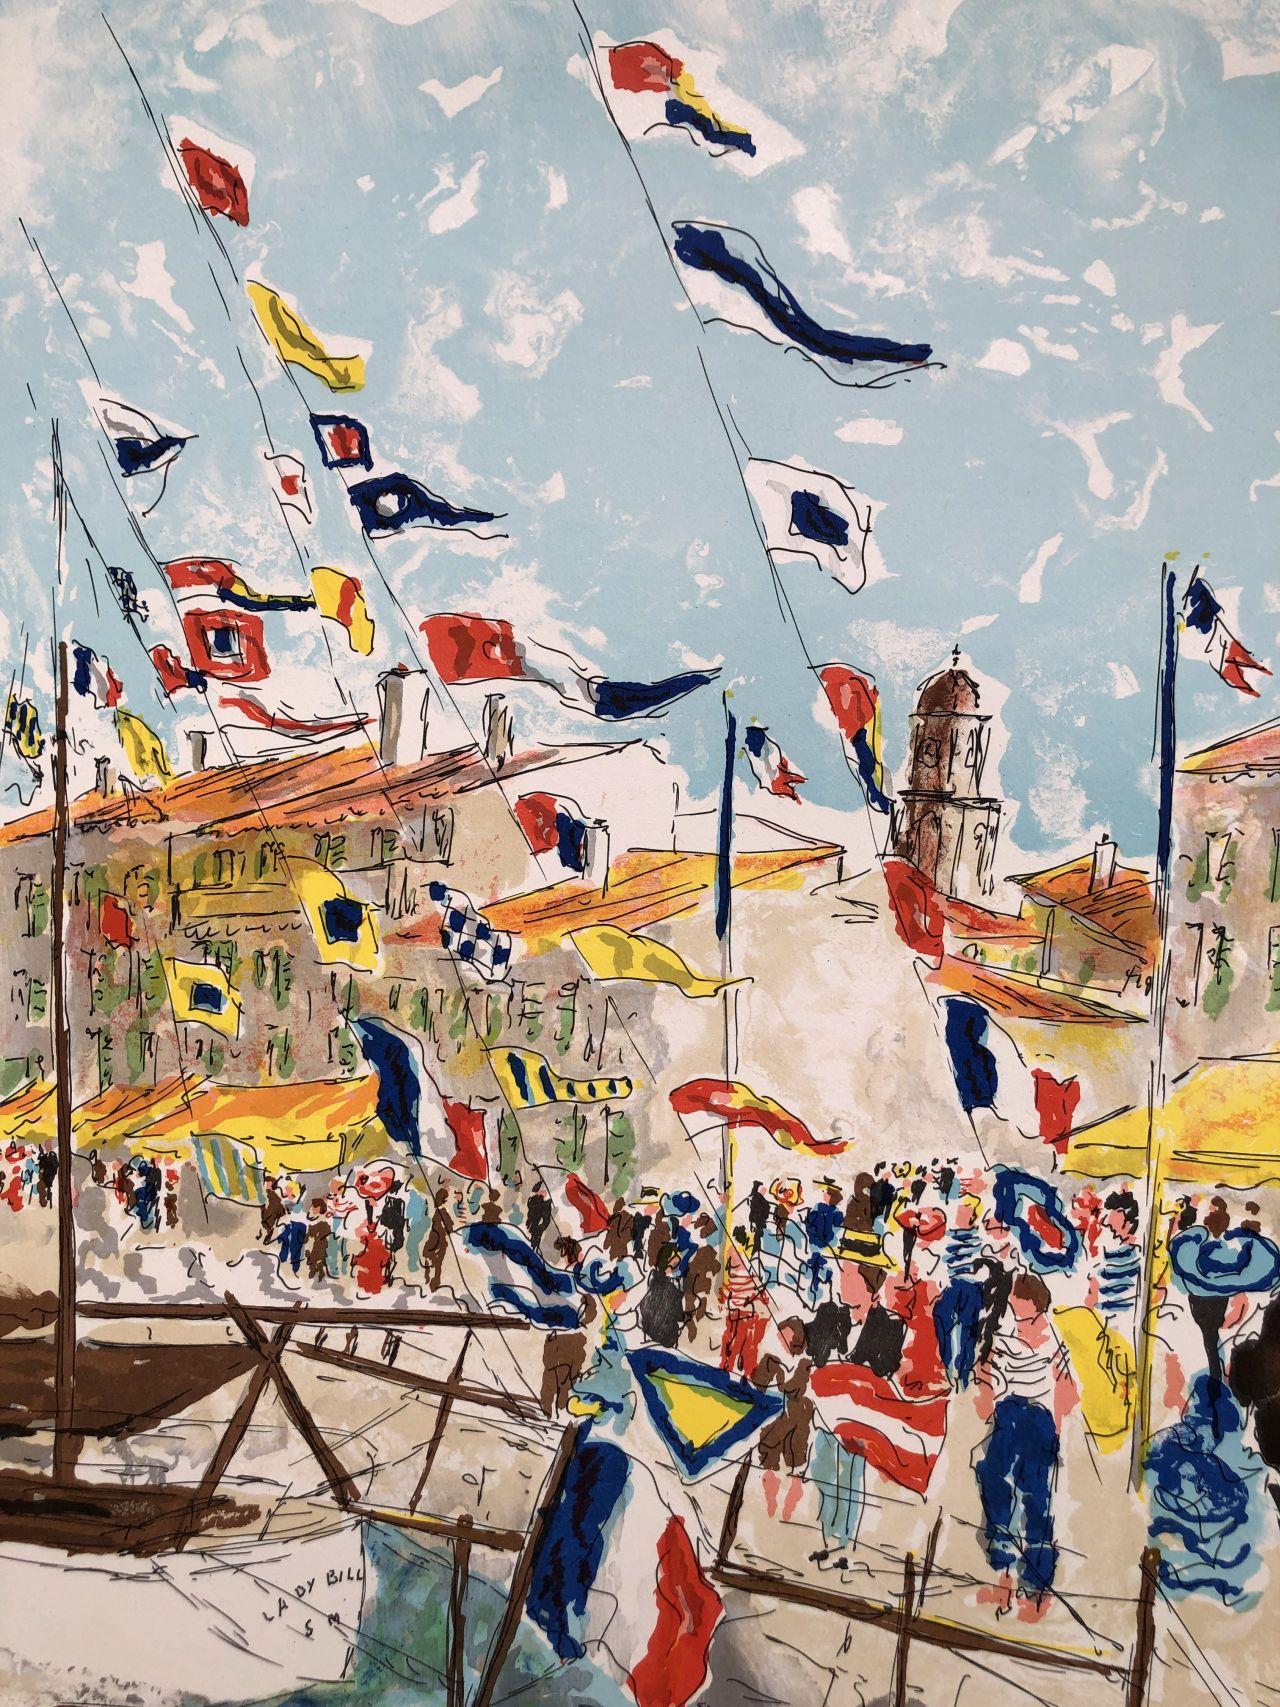 Urbain HUCHET
Saint-Tropez (Côte d'Azur)

Lithographie originale, 1982
Signé au crayon par l'artiste.
Numéroté /275 exemplaires
Sur Vellum de Rives, format 75 x 54 cm (c. 29,5 x 21 inch)
Bon état